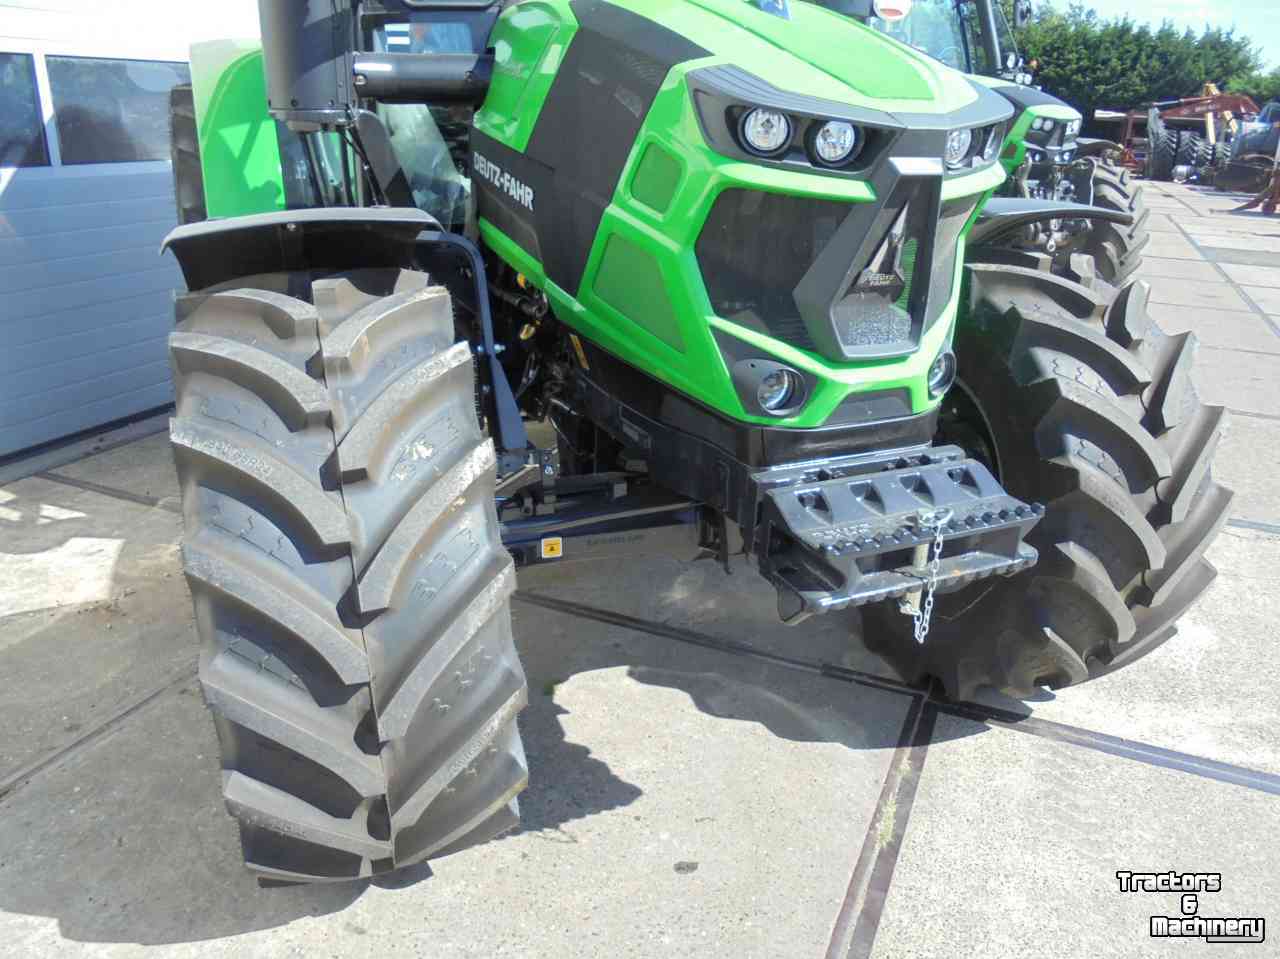 Tractors Deutz-Fahr 6125C Powershift trekker Deutz tractor nieuw uit voorraad leverbaar